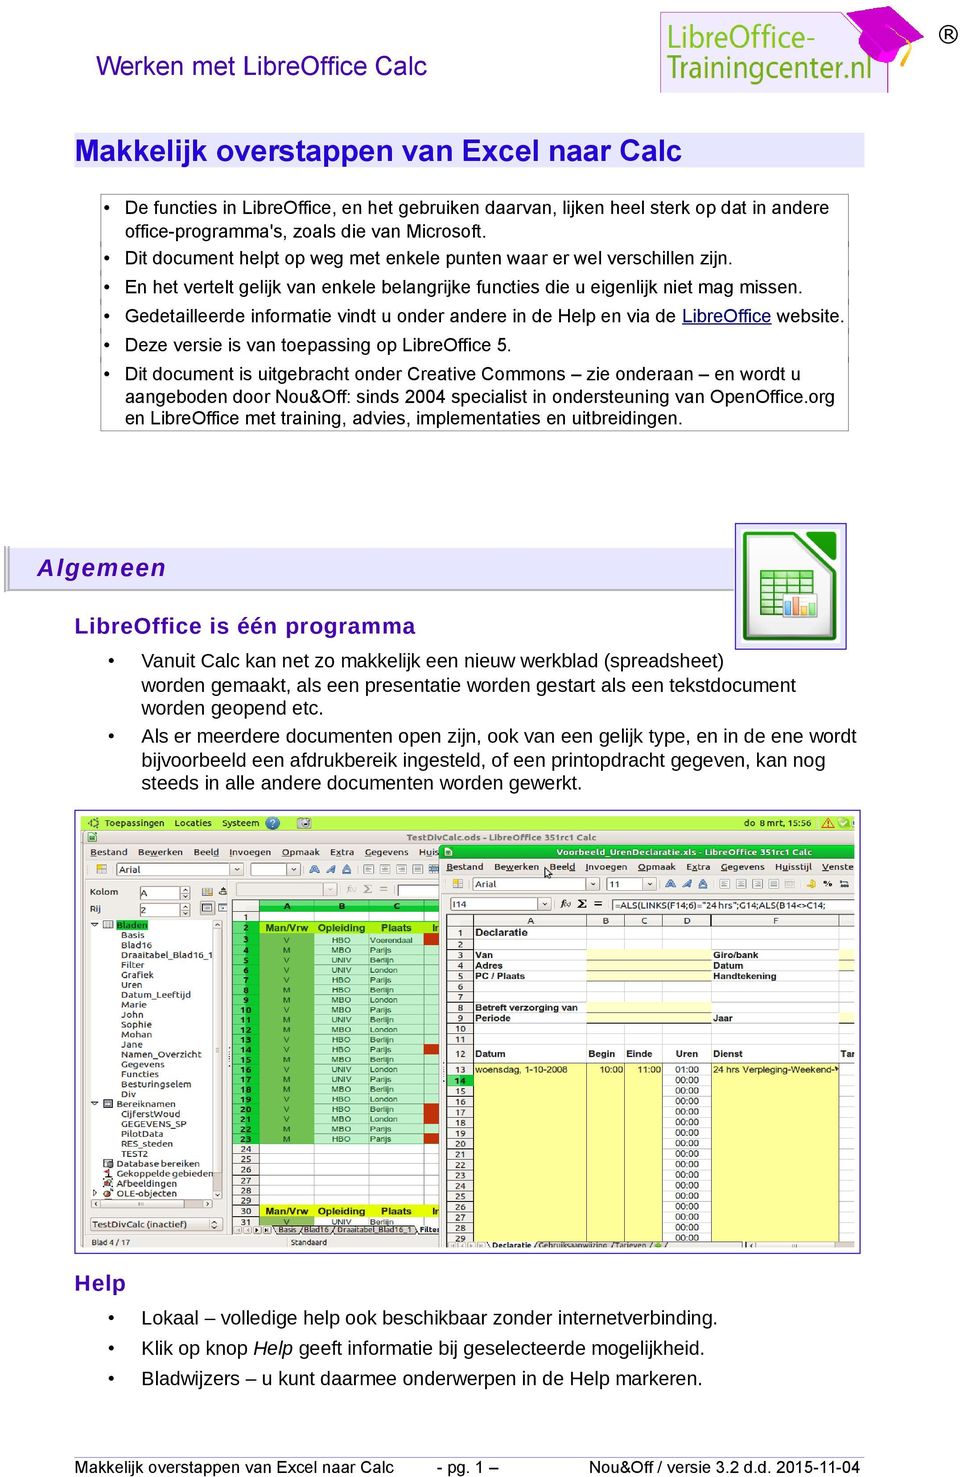 Gedetailleerde informatie vindt u onder andere in de Help en via de LibreOffice website. Deze versie is van toepassing op LibreOffice 5.